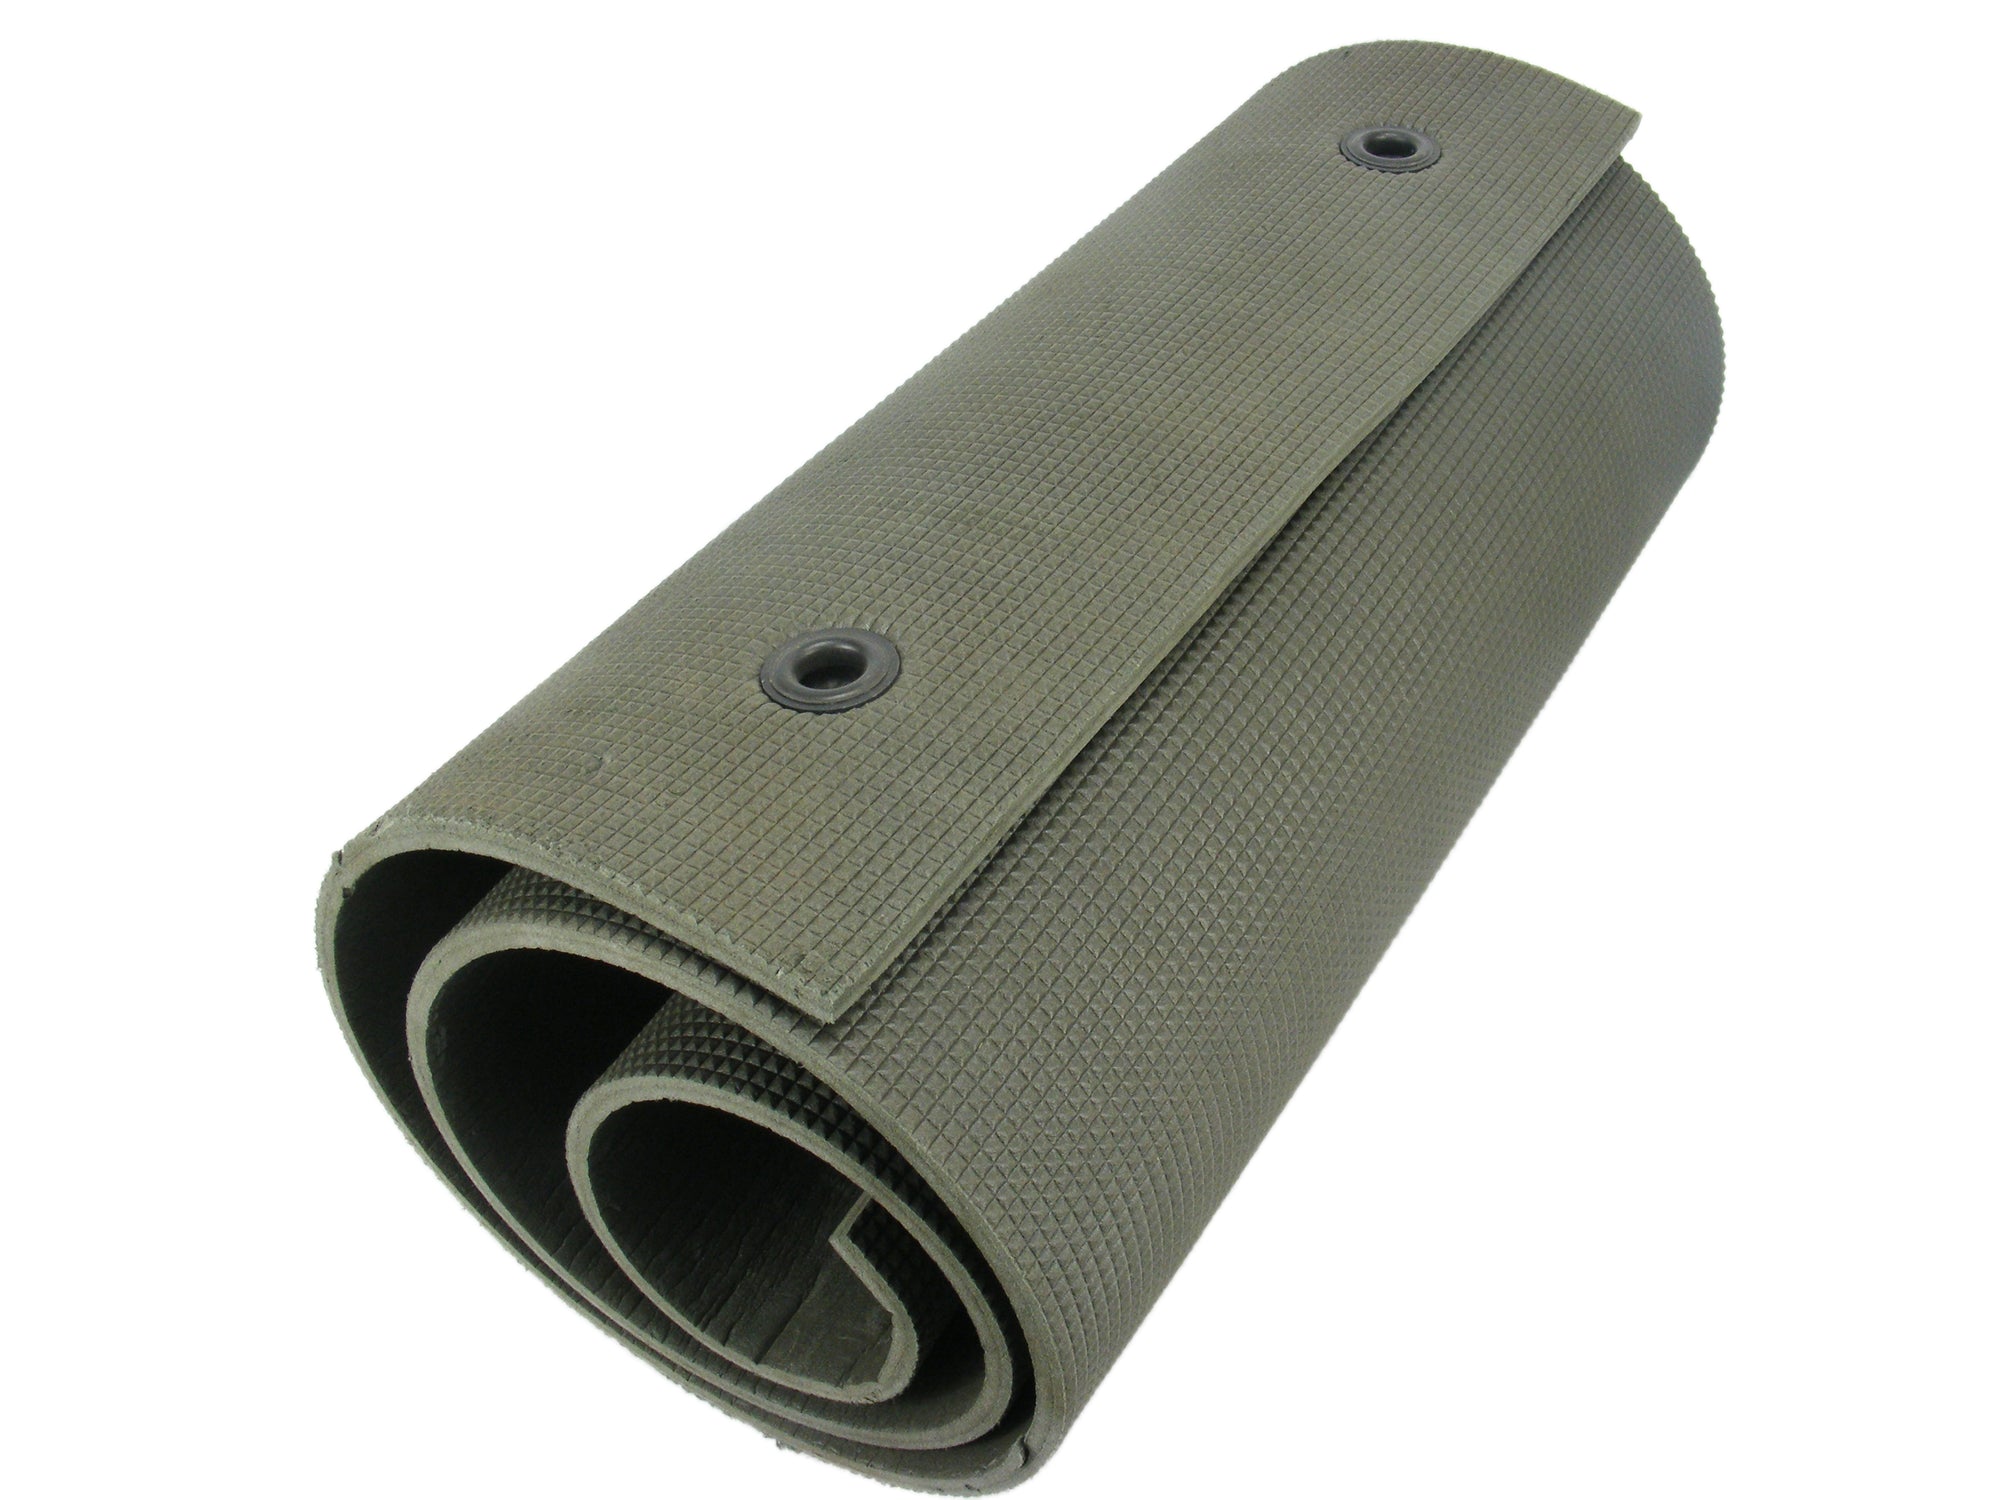 Dutch thin (1cm) military rolled sleep mat